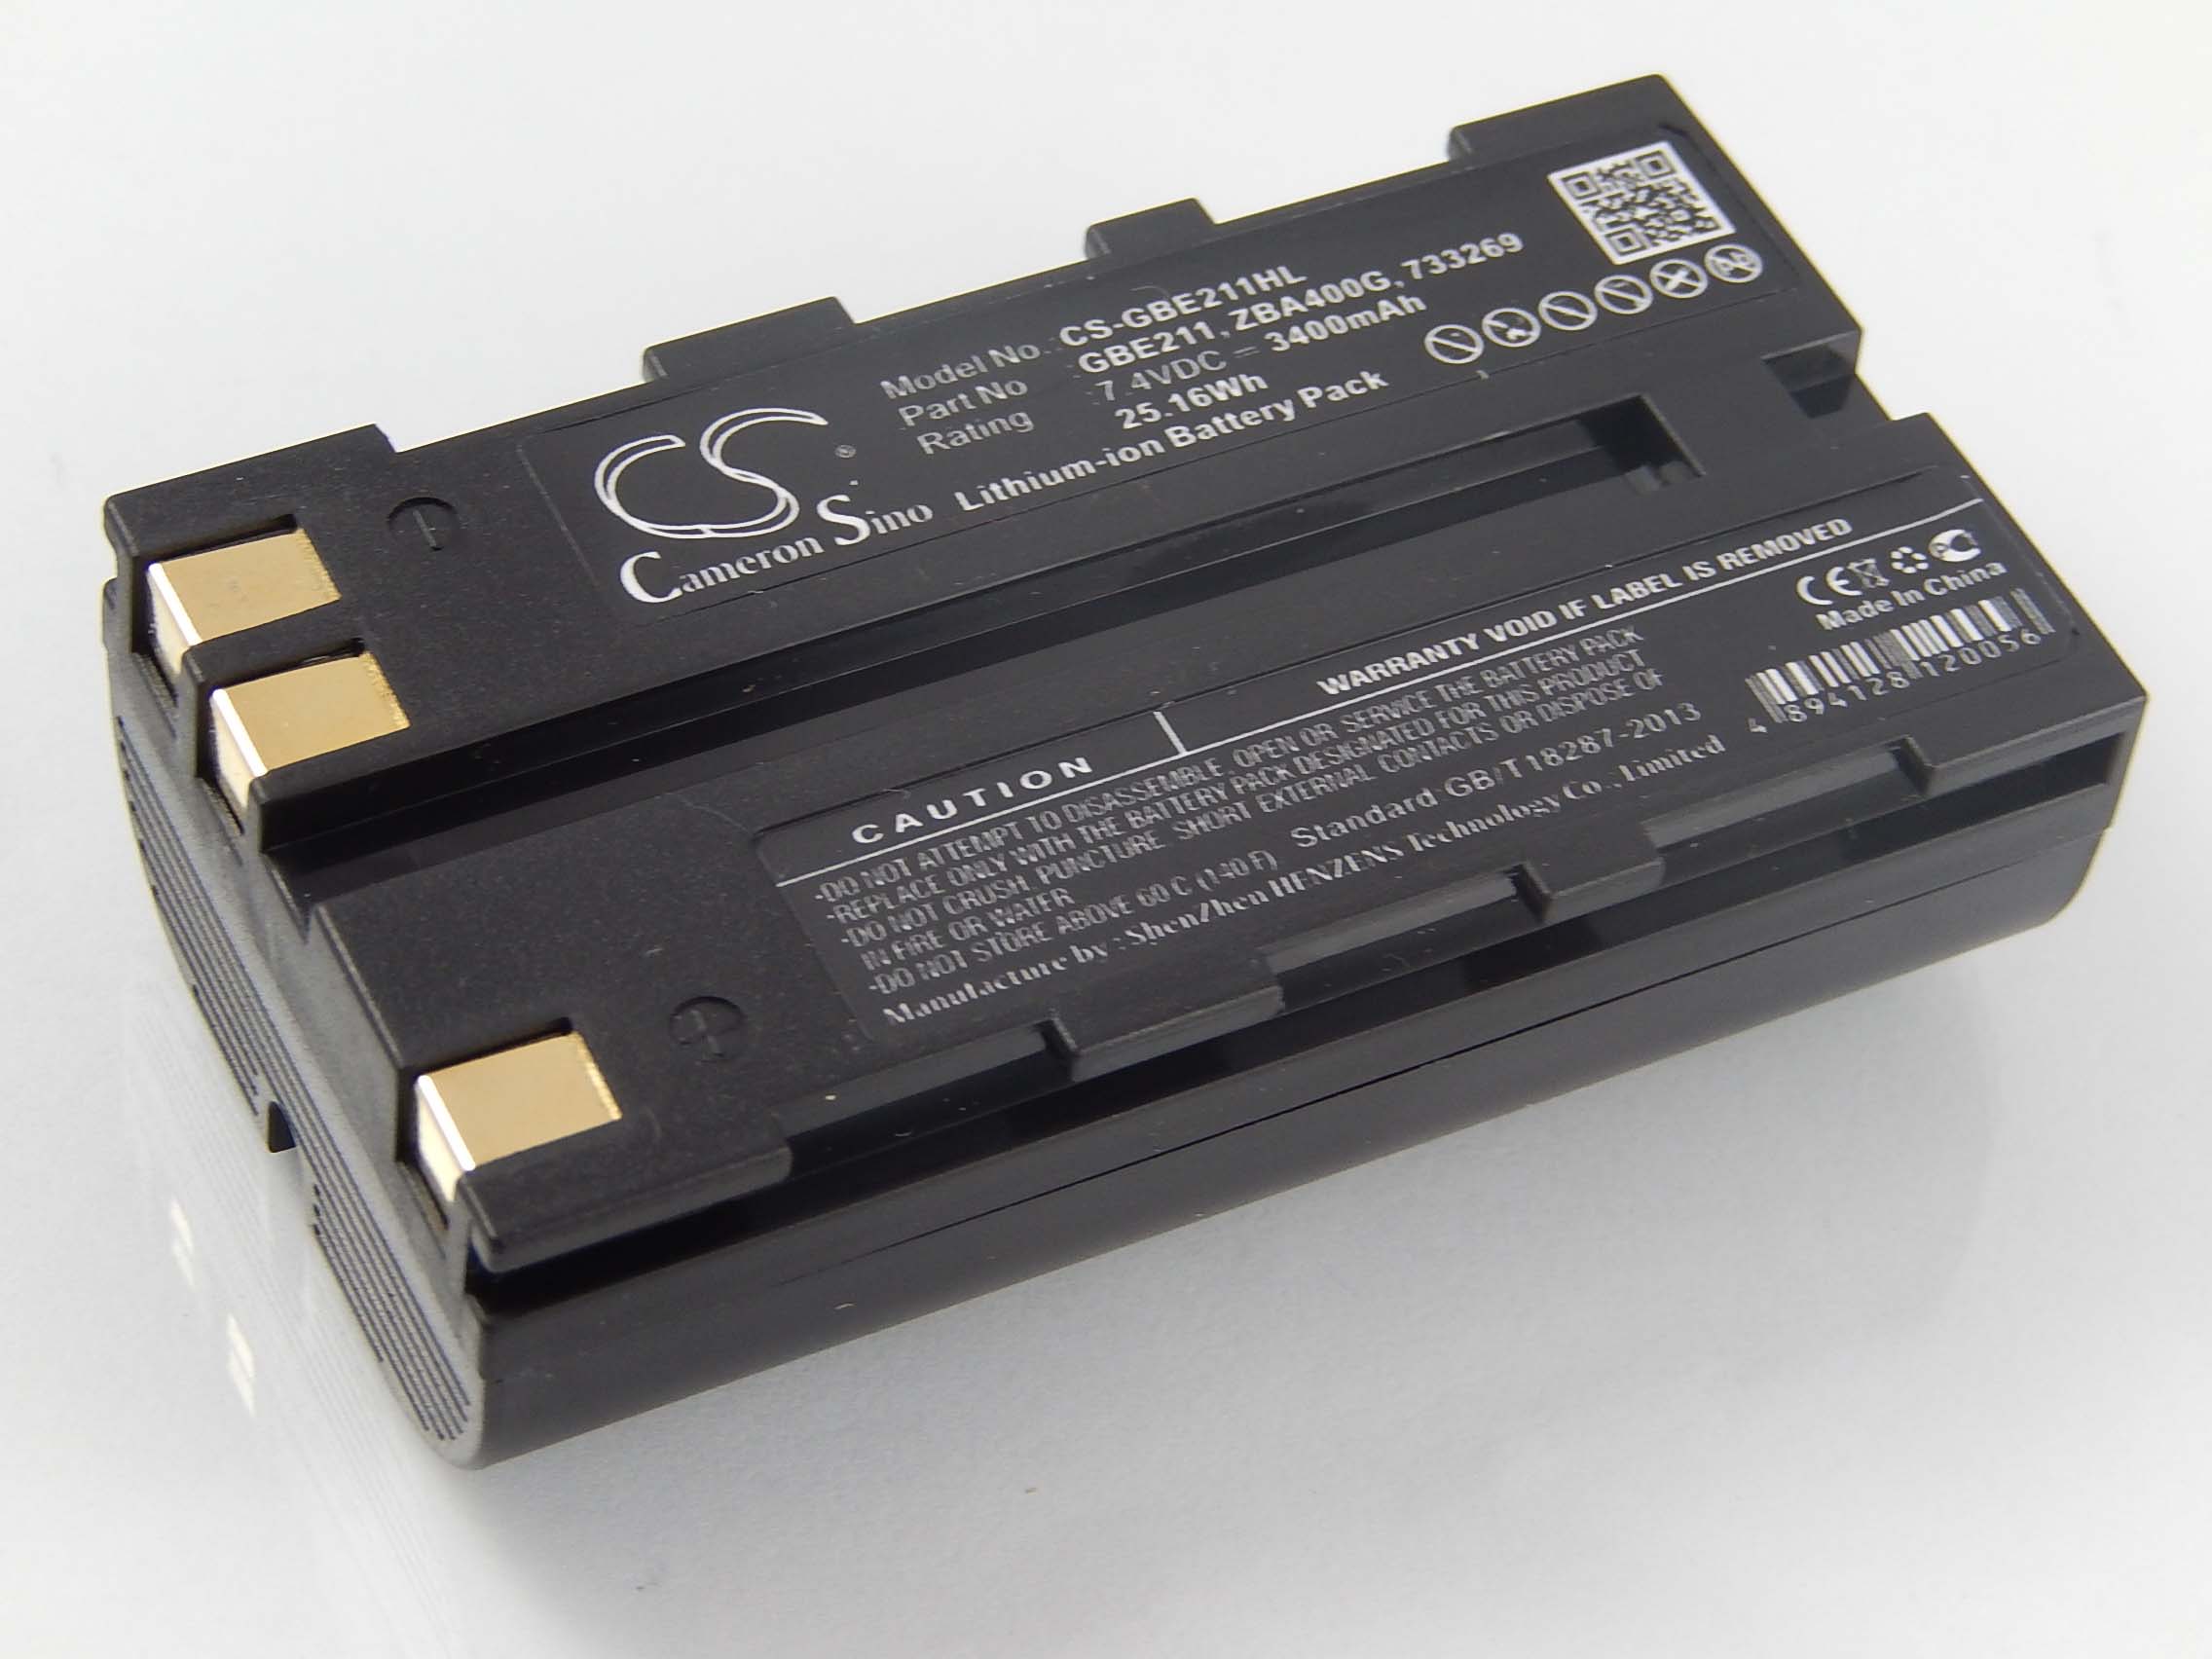 Batterie remplace Geomax ZBA400, ZBA200 pour outil de mesure - 3400mAh 7,4V Li-ion